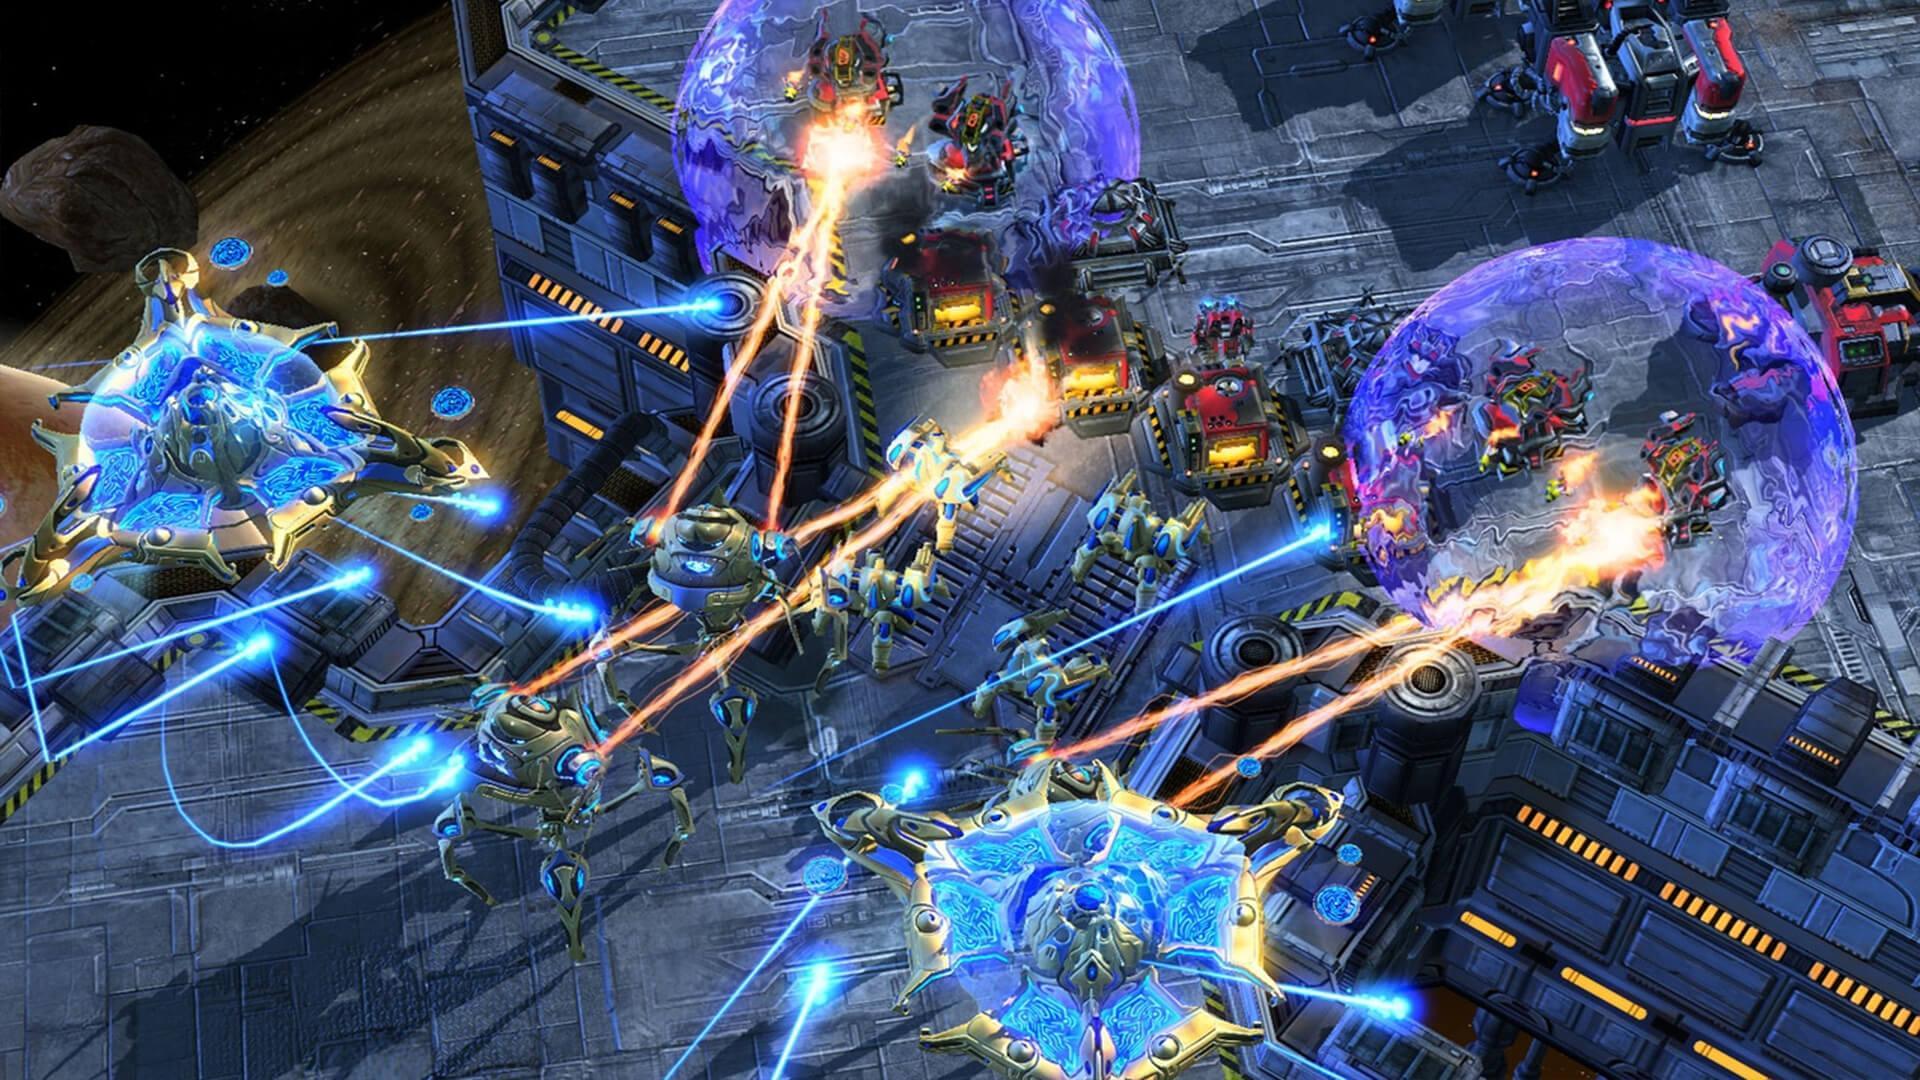 لماذا تموت سلاسل ألعابنا المفضلة بسهولة؟ (الجزء 2) : StarCraft